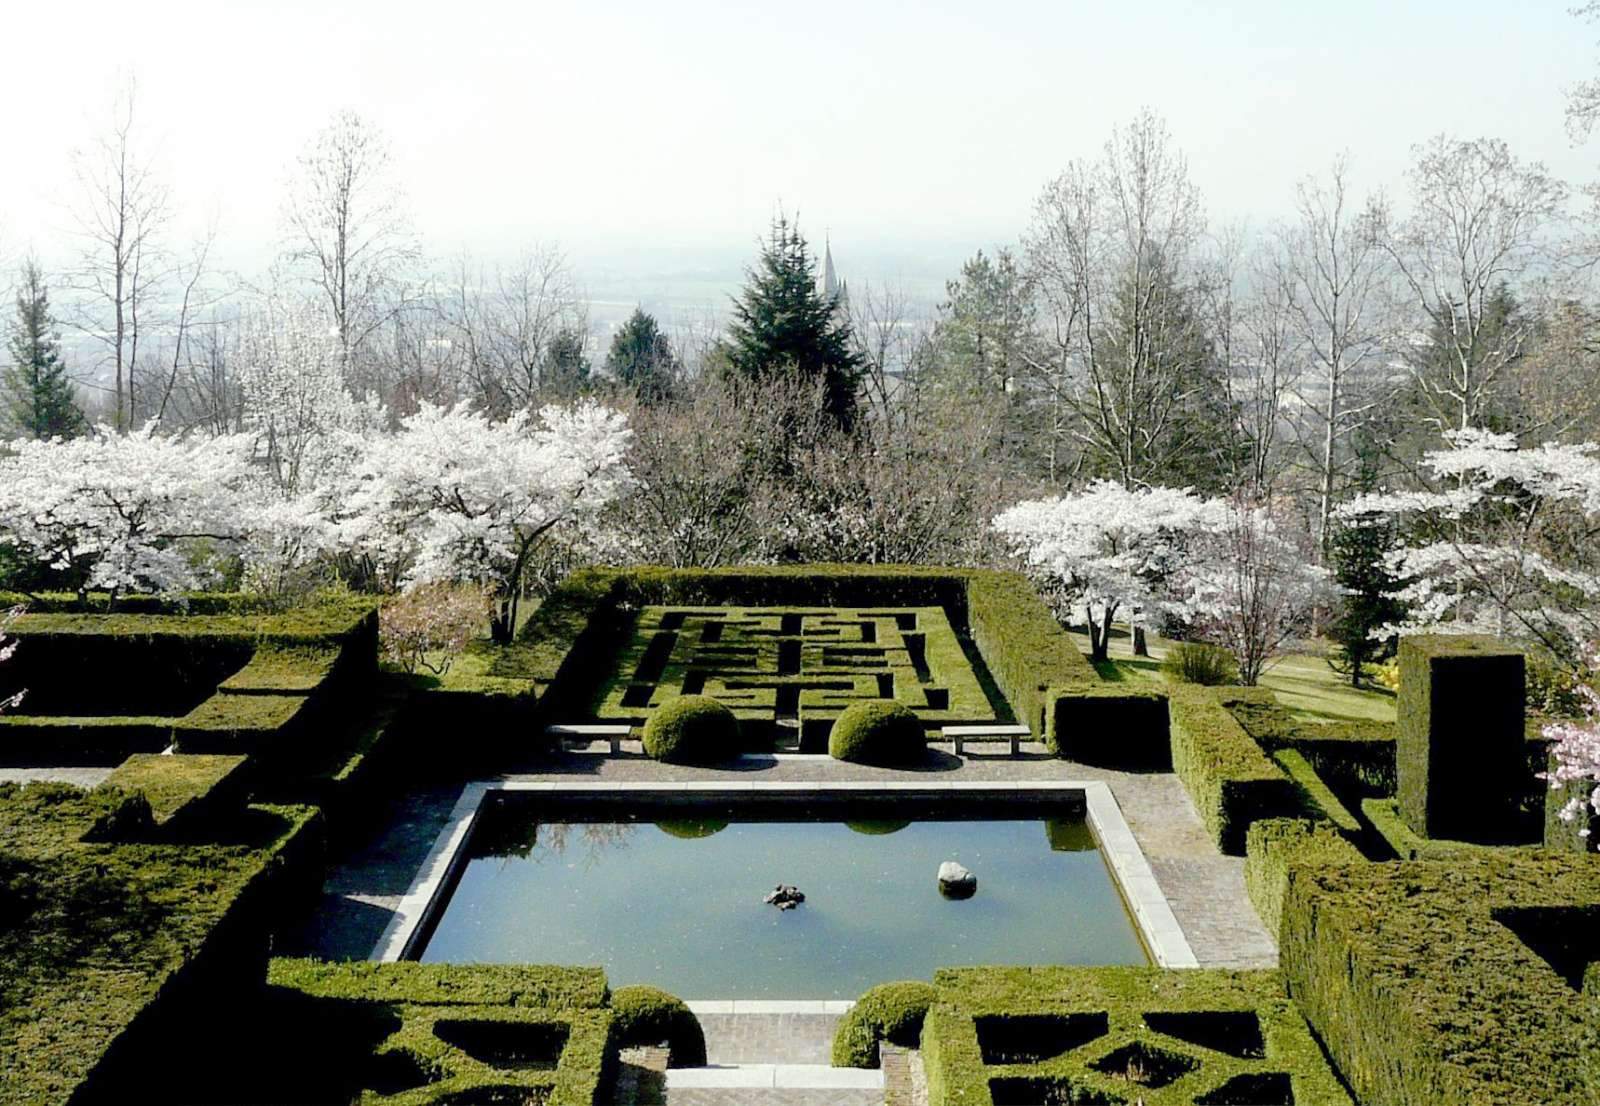 Villa Silvio Pellico, el jardín y el laberinto: la obra maestra italiana de Russell Page